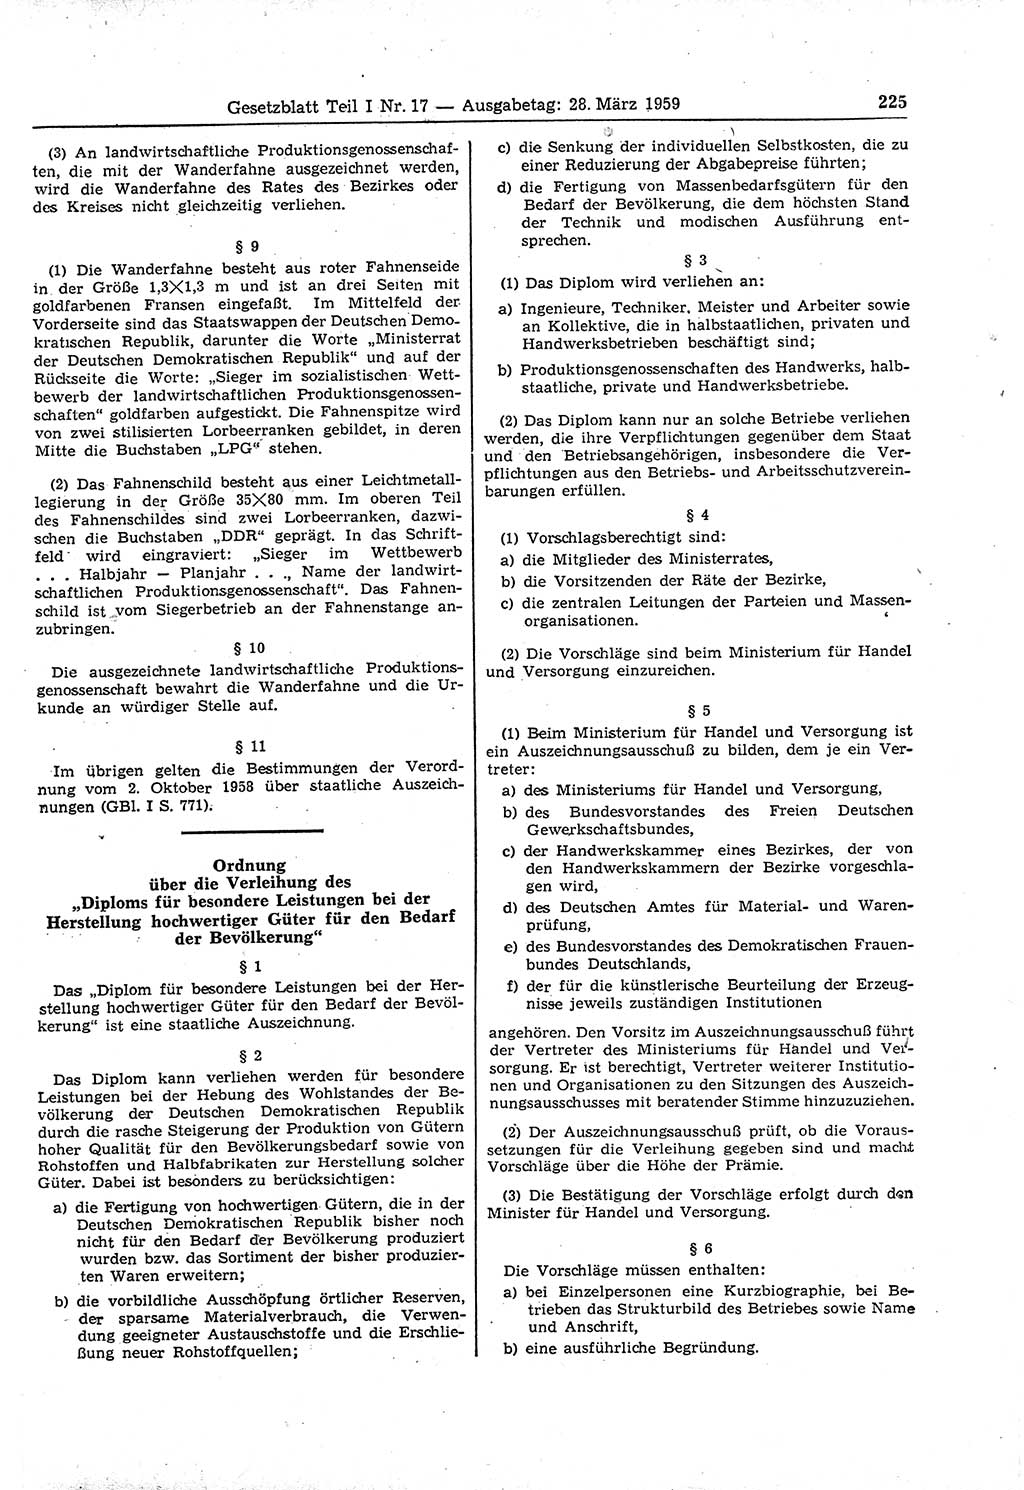 Gesetzblatt (GBl.) der Deutschen Demokratischen Republik (DDR) Teil Ⅰ 1959, Seite 225 (GBl. DDR Ⅰ 1959, S. 225)